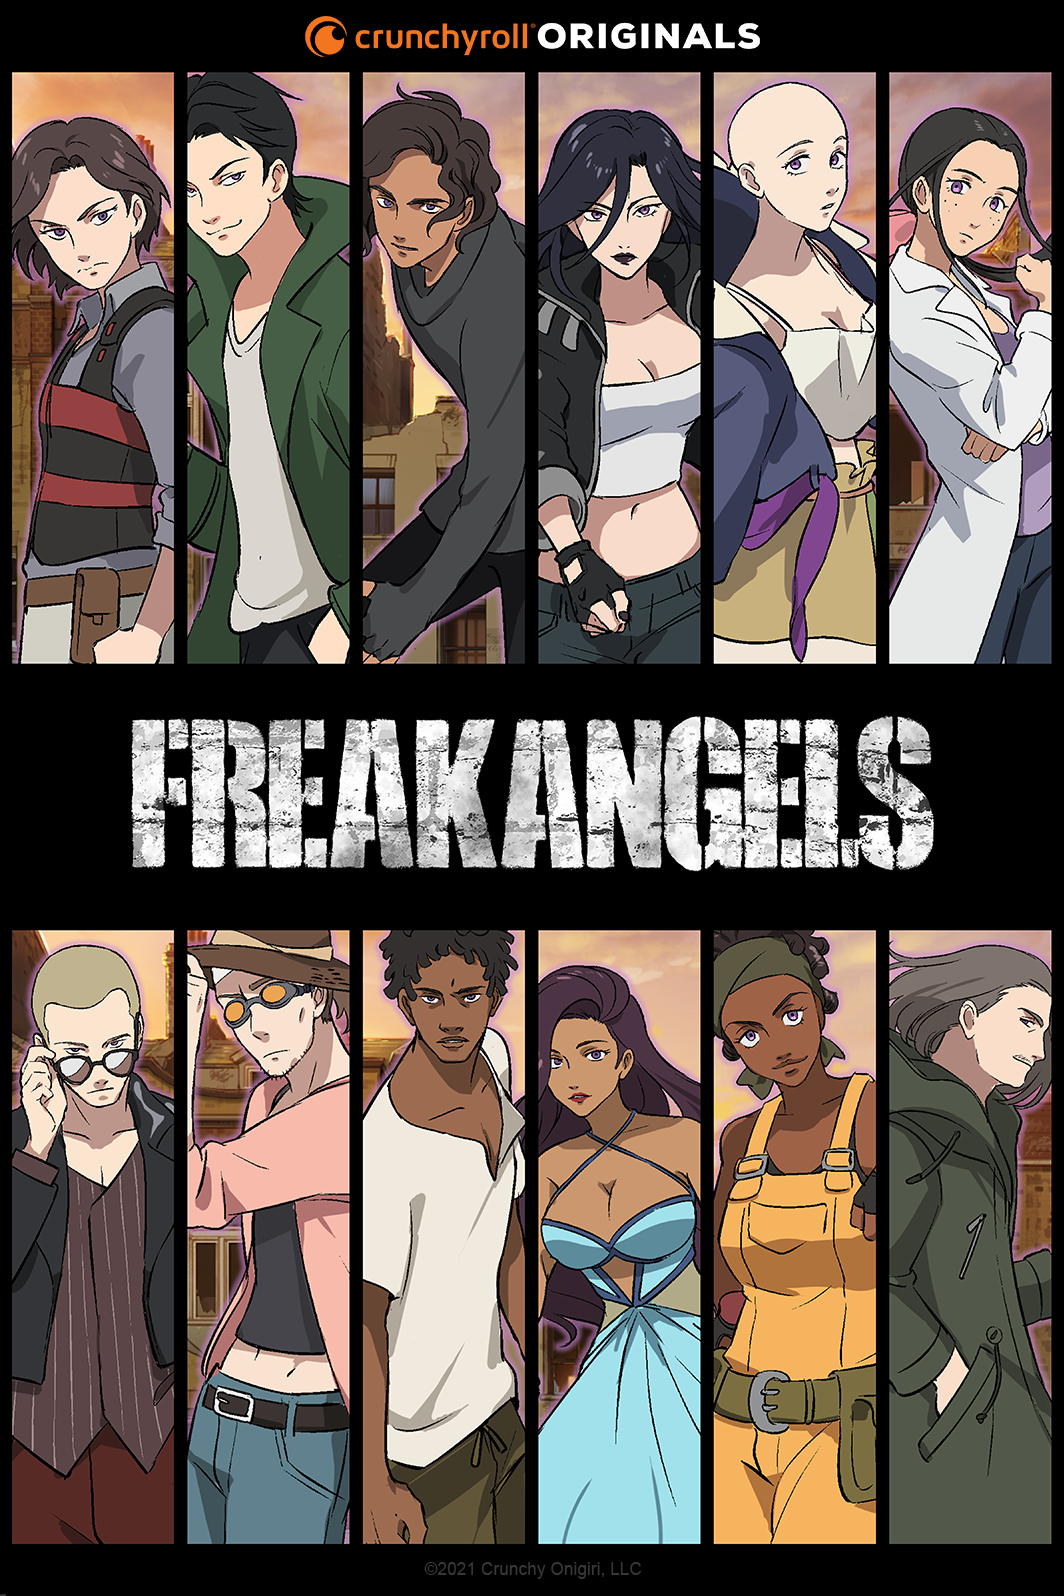 freakangels animated series key visual